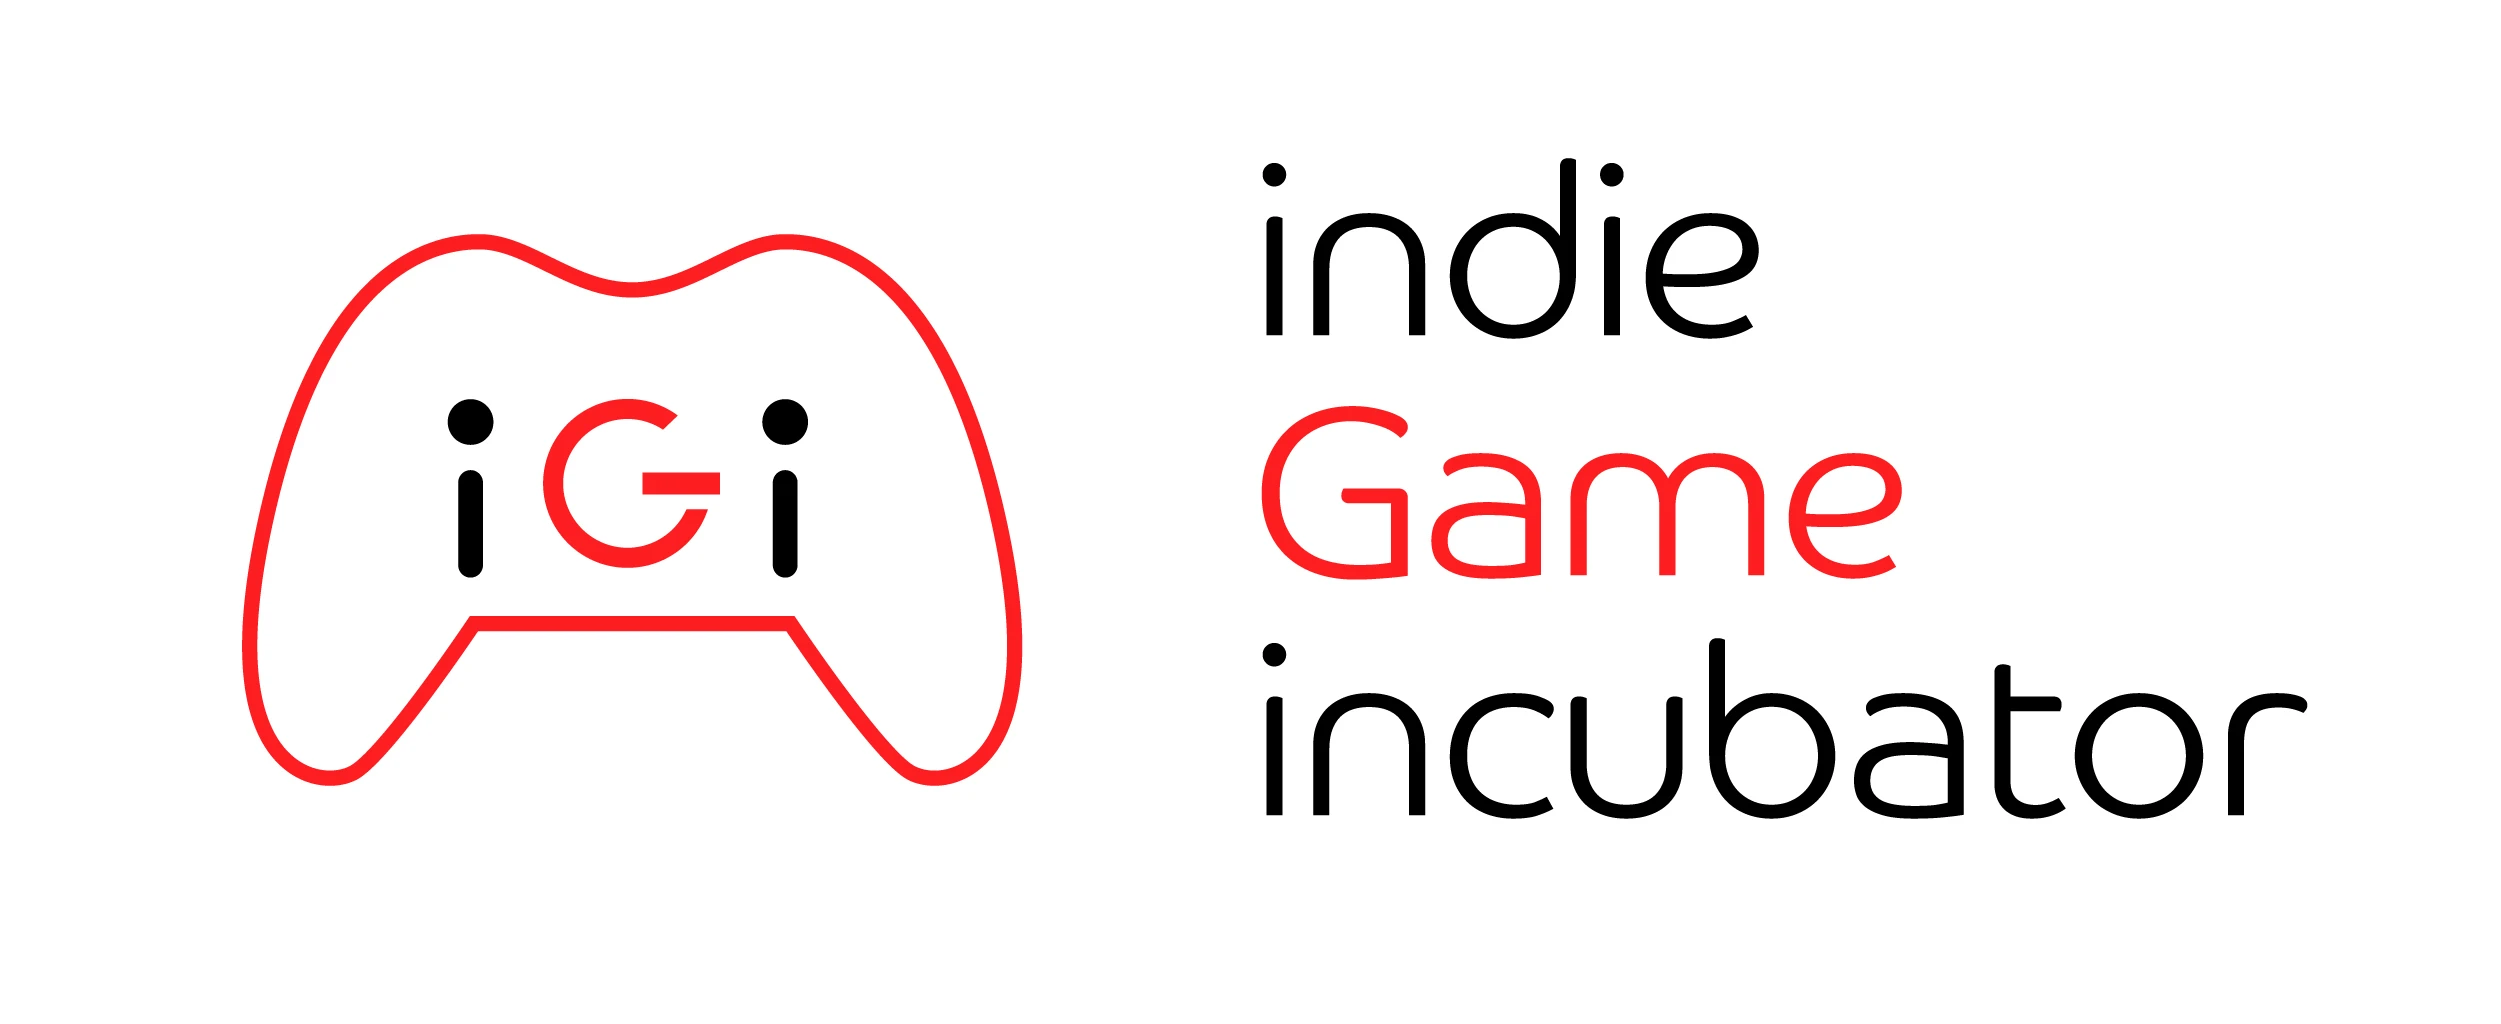 ゲーム開発者支援プログラム「iGi」発足　日本のインディーゲームを世界へ